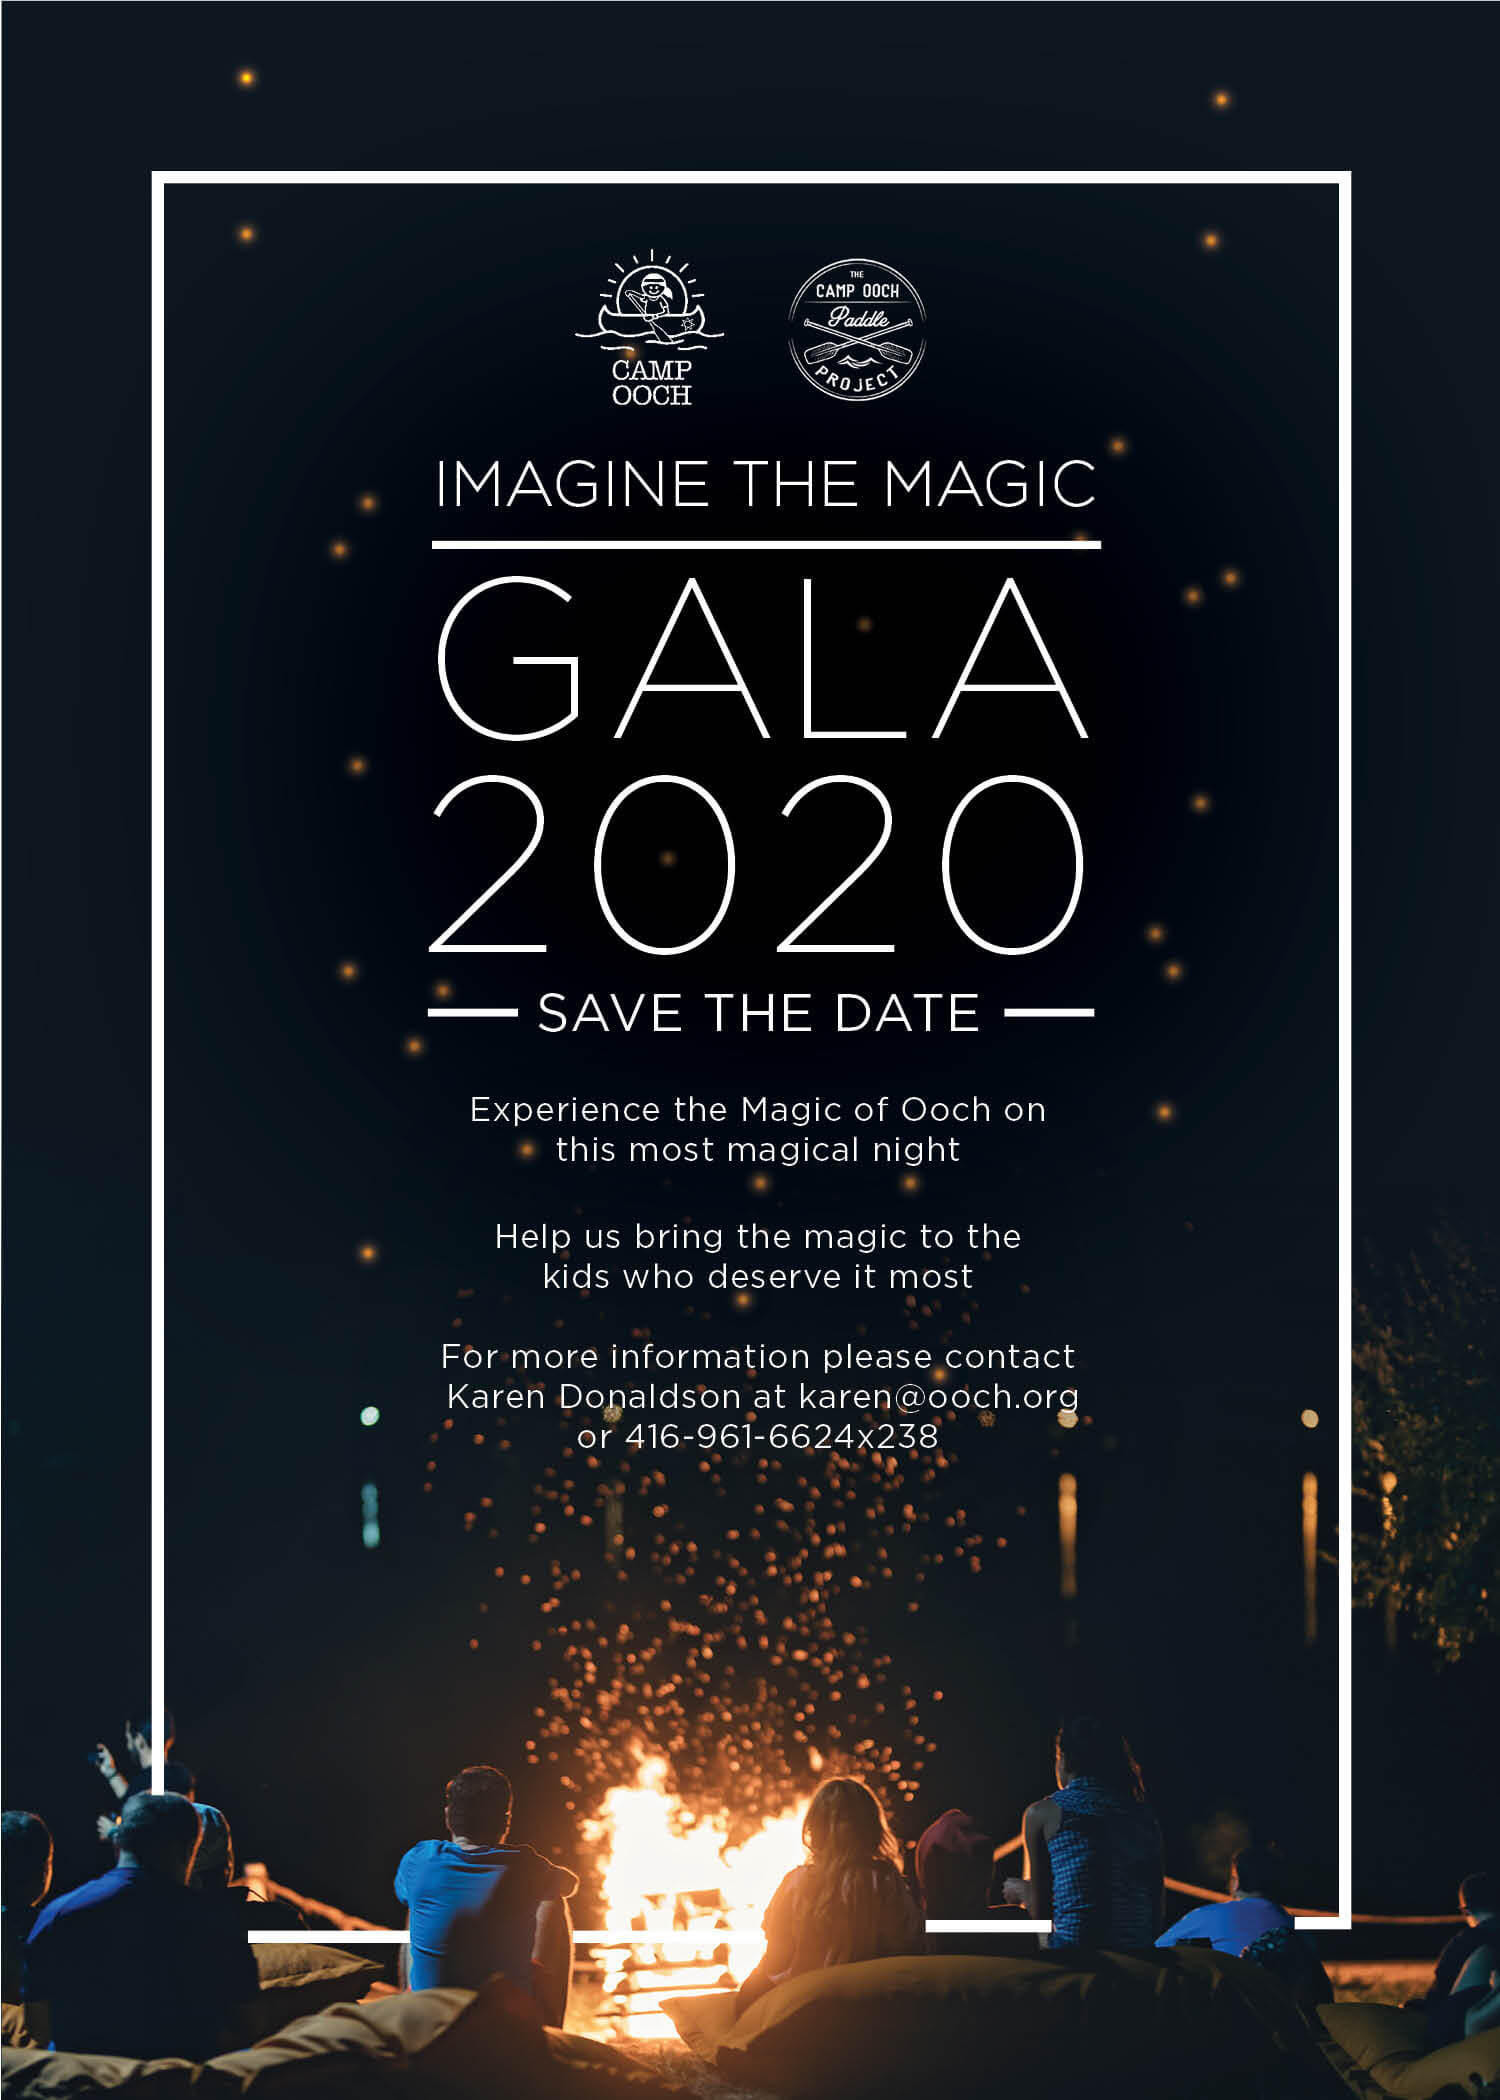 Imagine - The Magic Gala